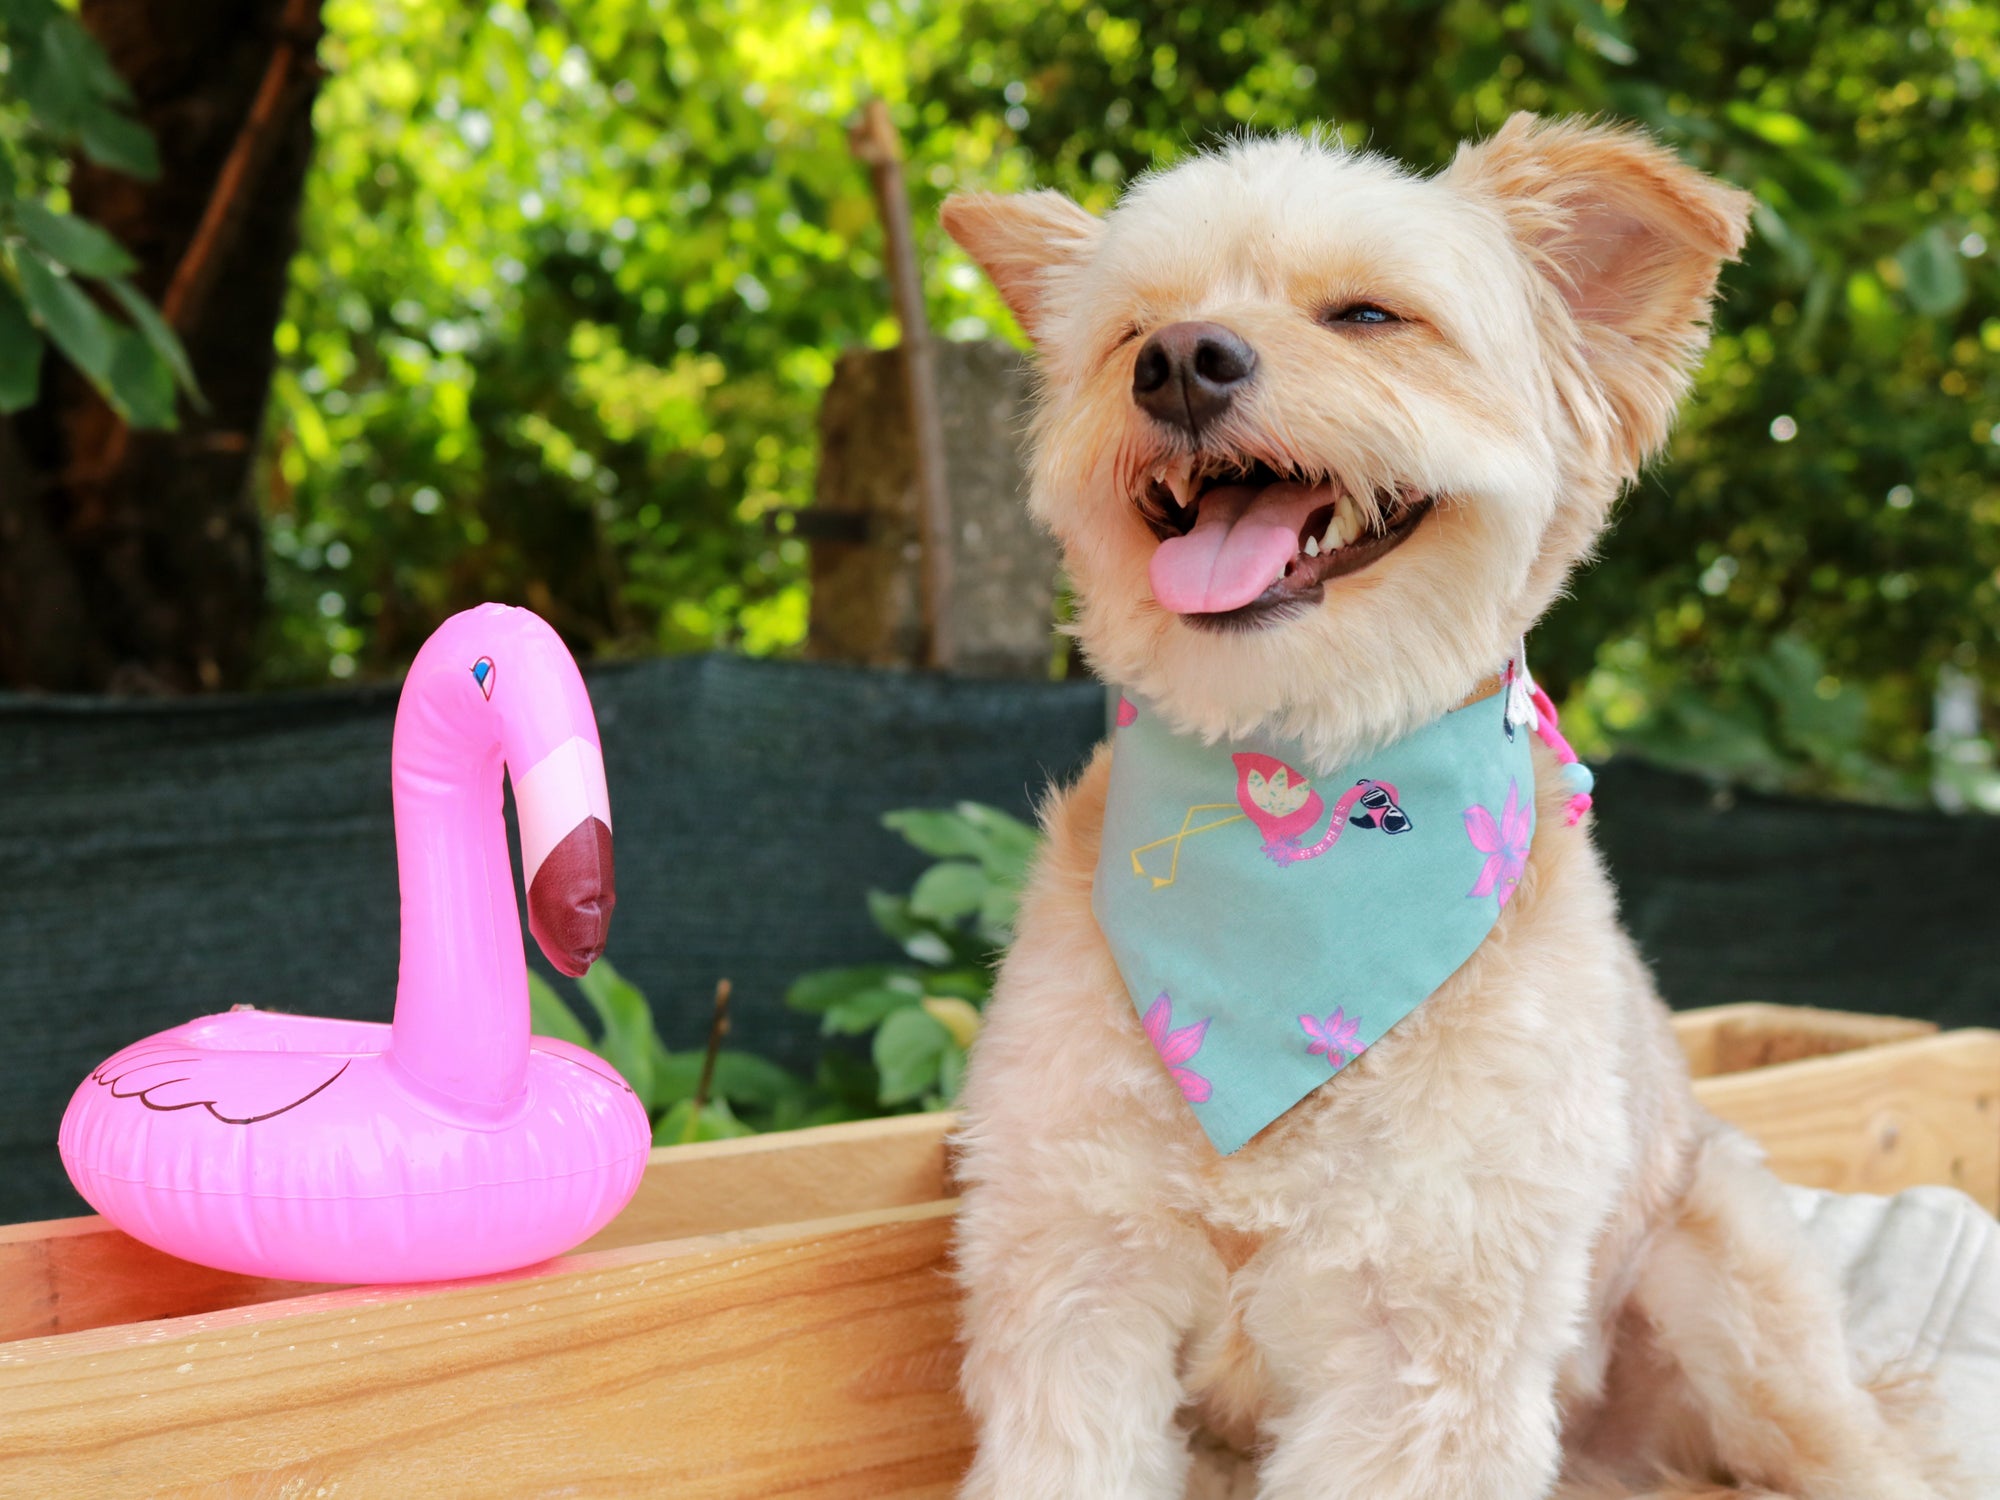 Süßer Malteser trägt türkises Hundehalstuch mit Flamingo in pink beim Fotoshooting